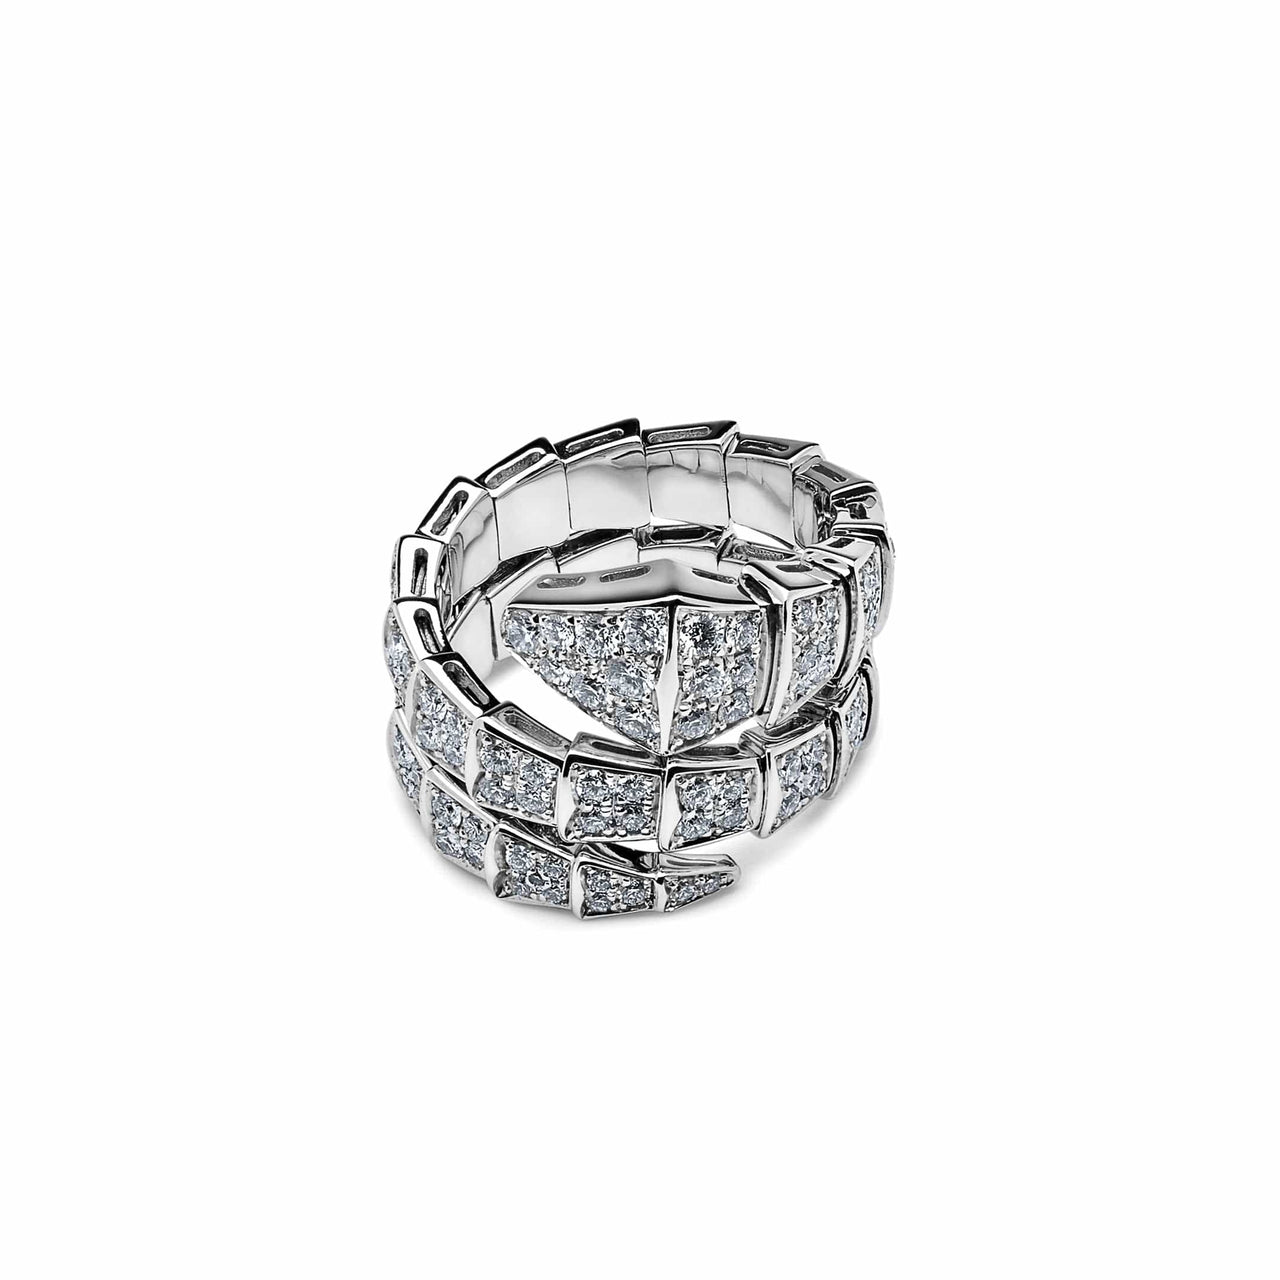 Rings Bvlgari Serpenti Viper White Gold Pave Diamond Two-coil Ring 345226 Wrist Aficionado